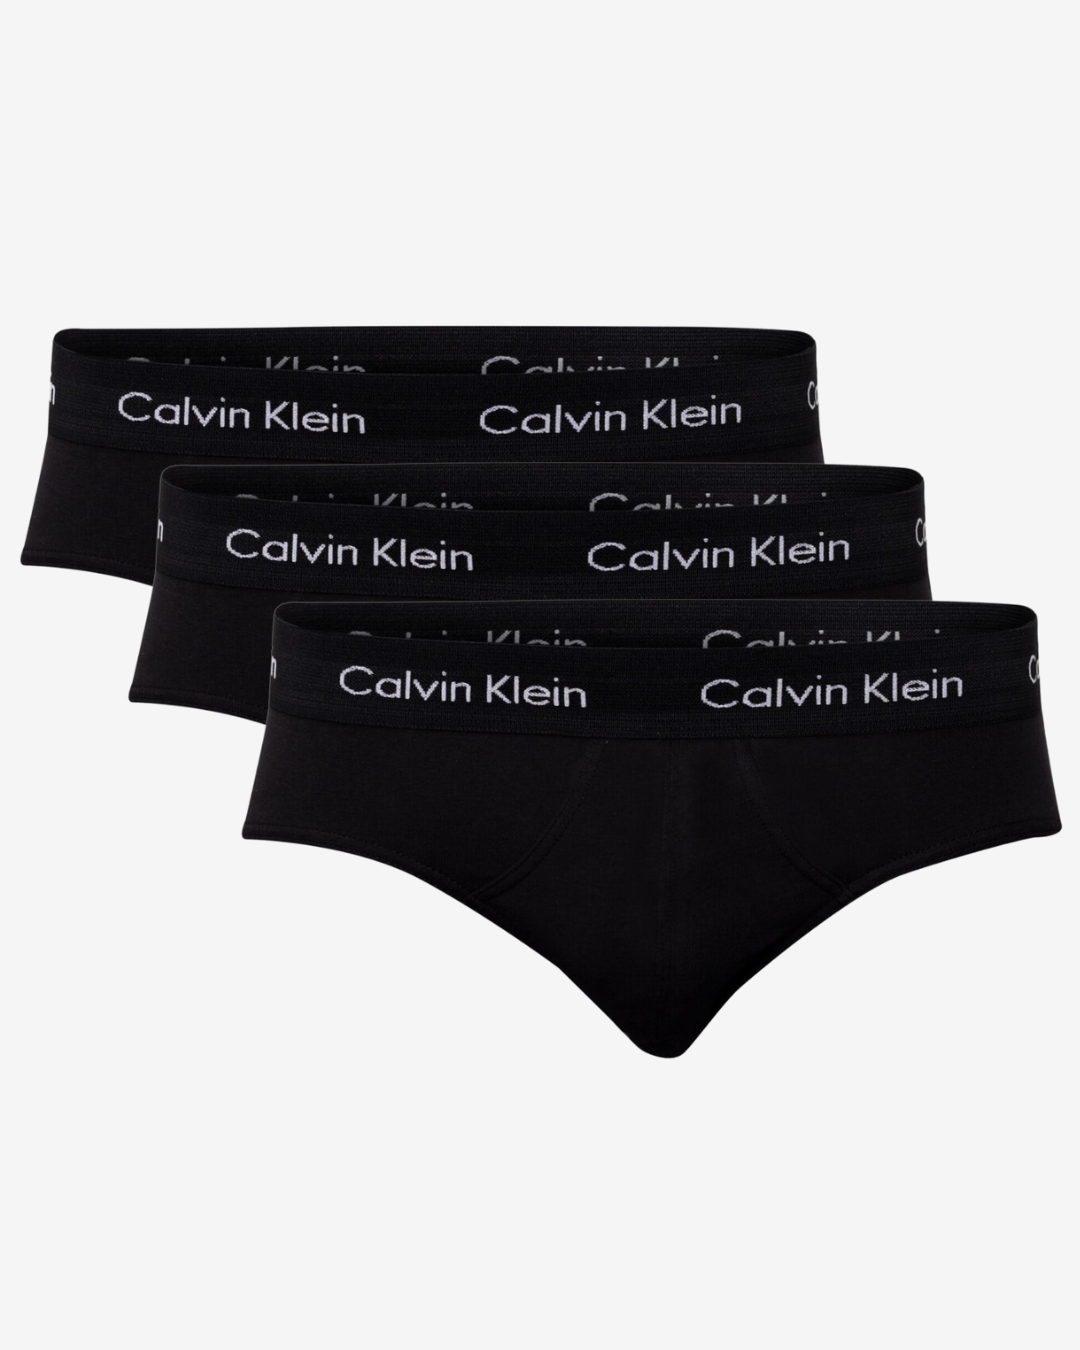 Billede af Calvin Klein Brief herre trusser 3-pak - Sort - Str. S - Modish.dk